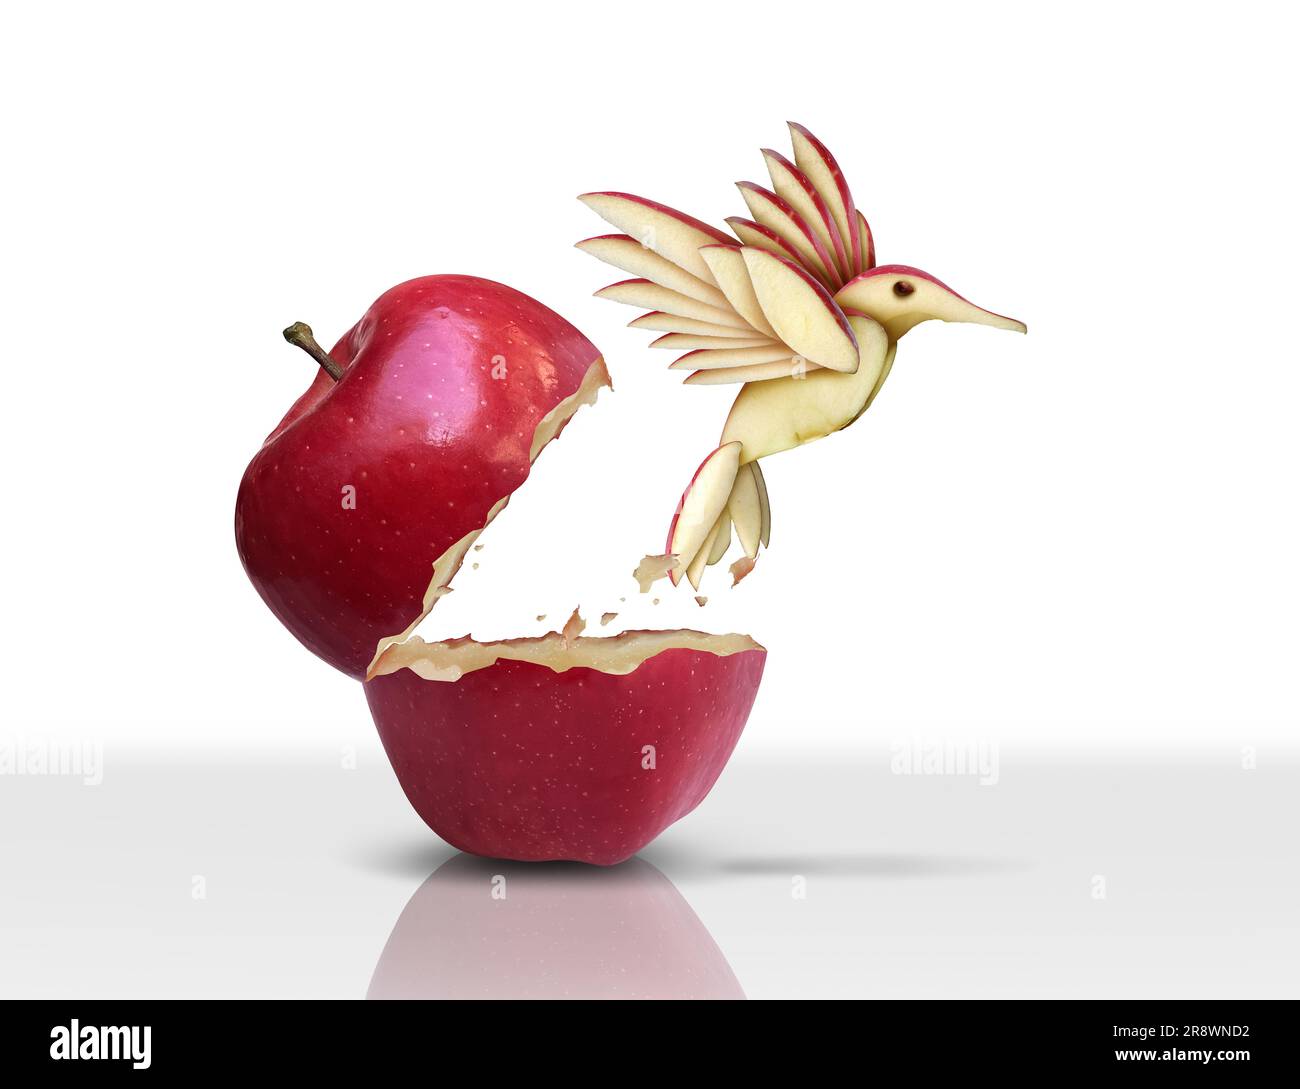 Innovatives bahnbrechendes Konzept als roter Apfel, das sich durch Innovation und Evolution in einen fliegenden Vogel als geschäftliche Metapher verwandelt. Stockfoto